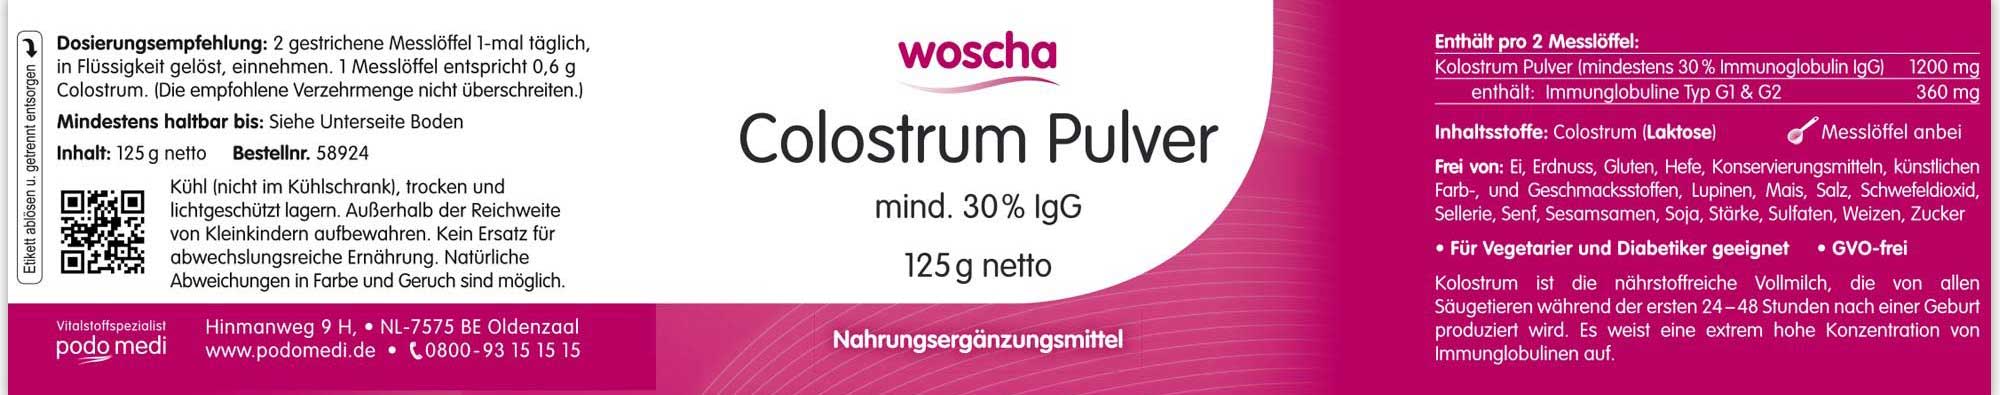 Woscha Colostrum Pulver von podo medi beinhaltet 125 Gramm Etikett